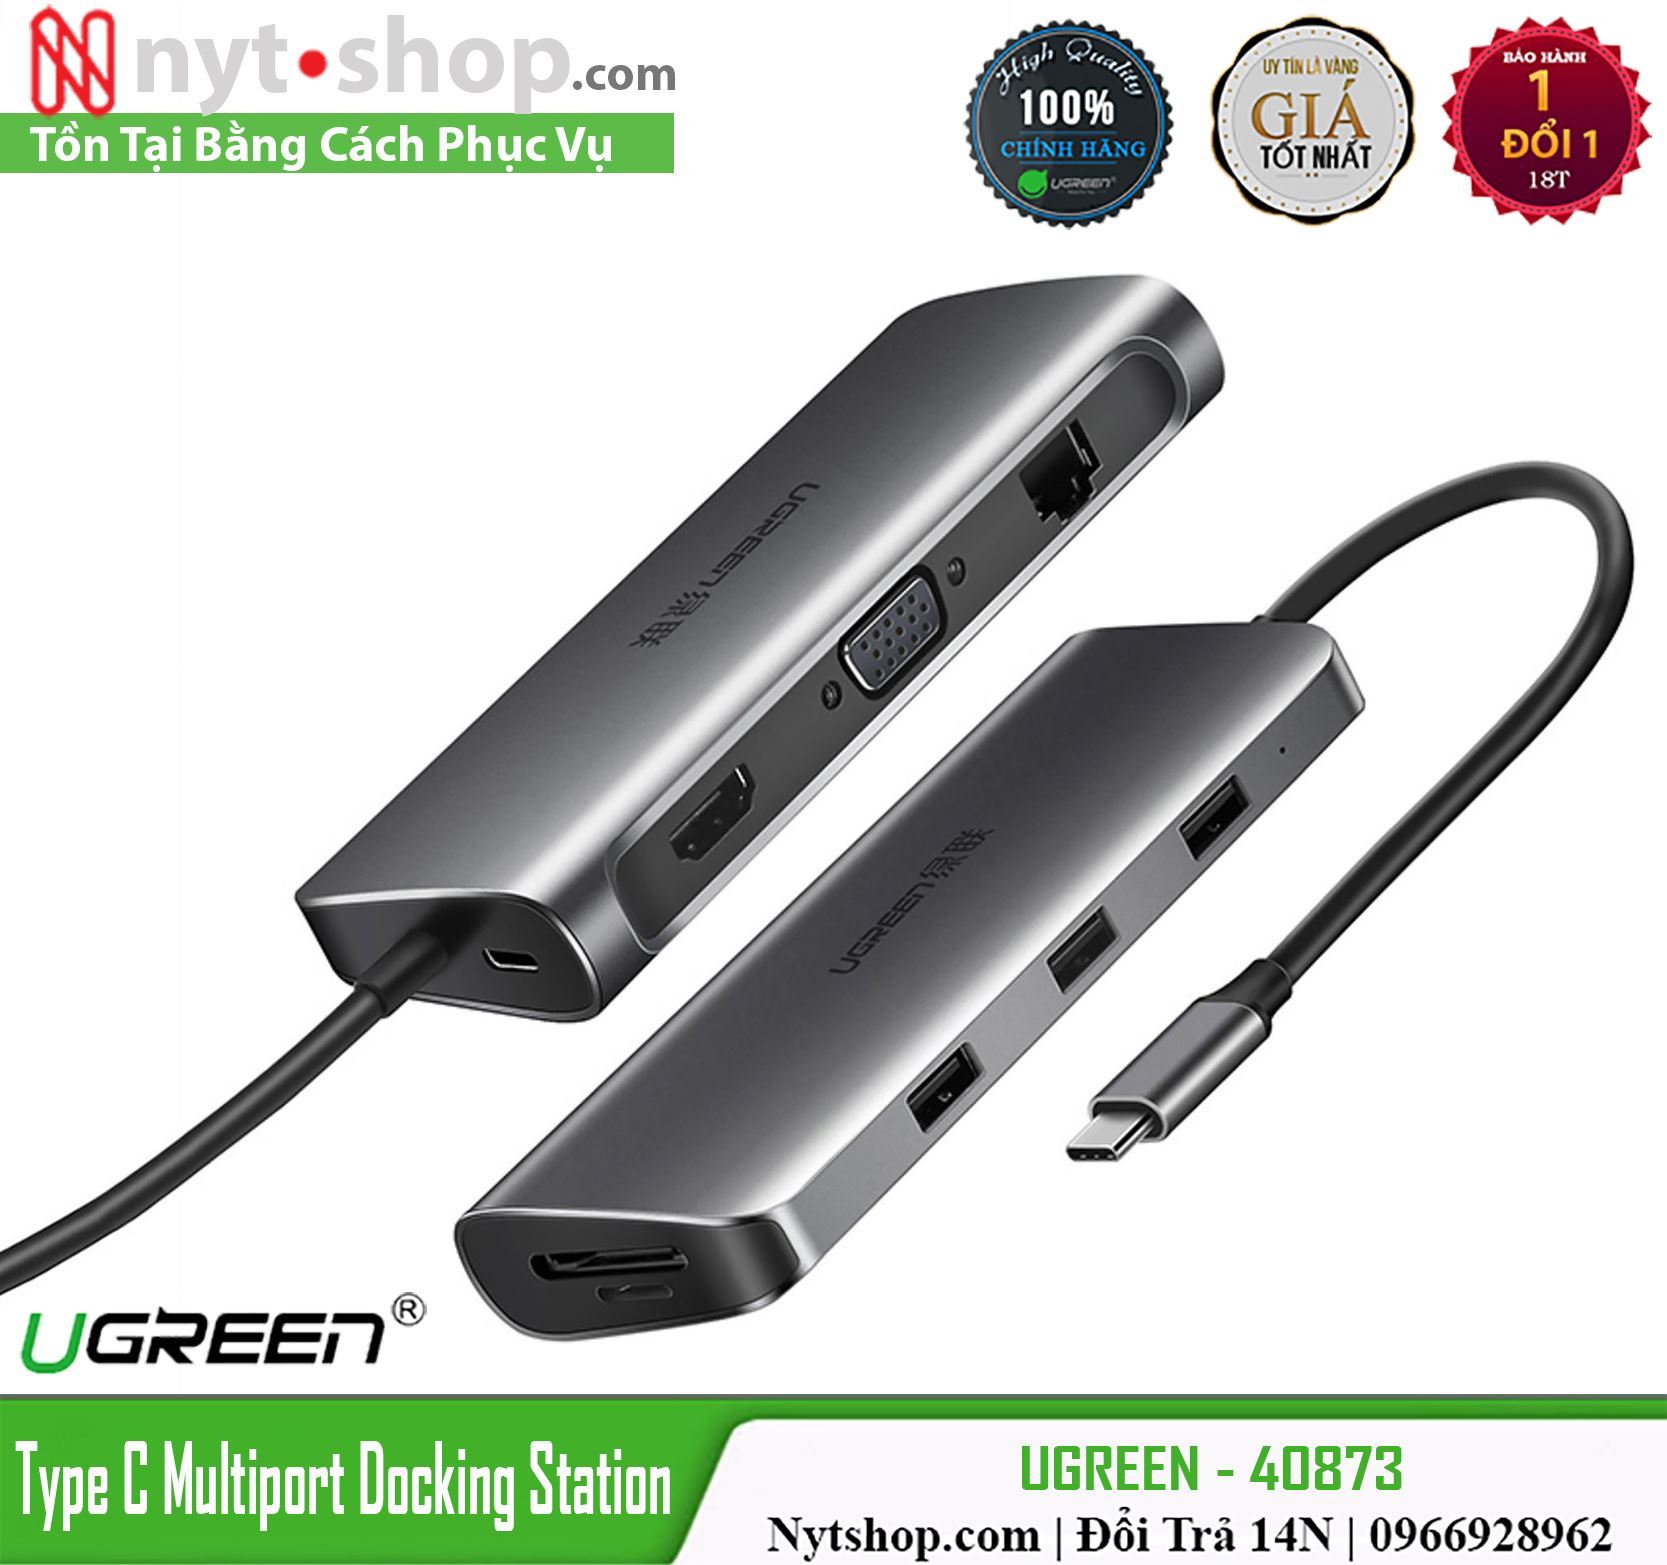 Hub USB C Multi HDMI 4K, Enthernet, USB 3.0, PD, TF, SD Ugreen CM179 40873 - Hàng Chính Hãng